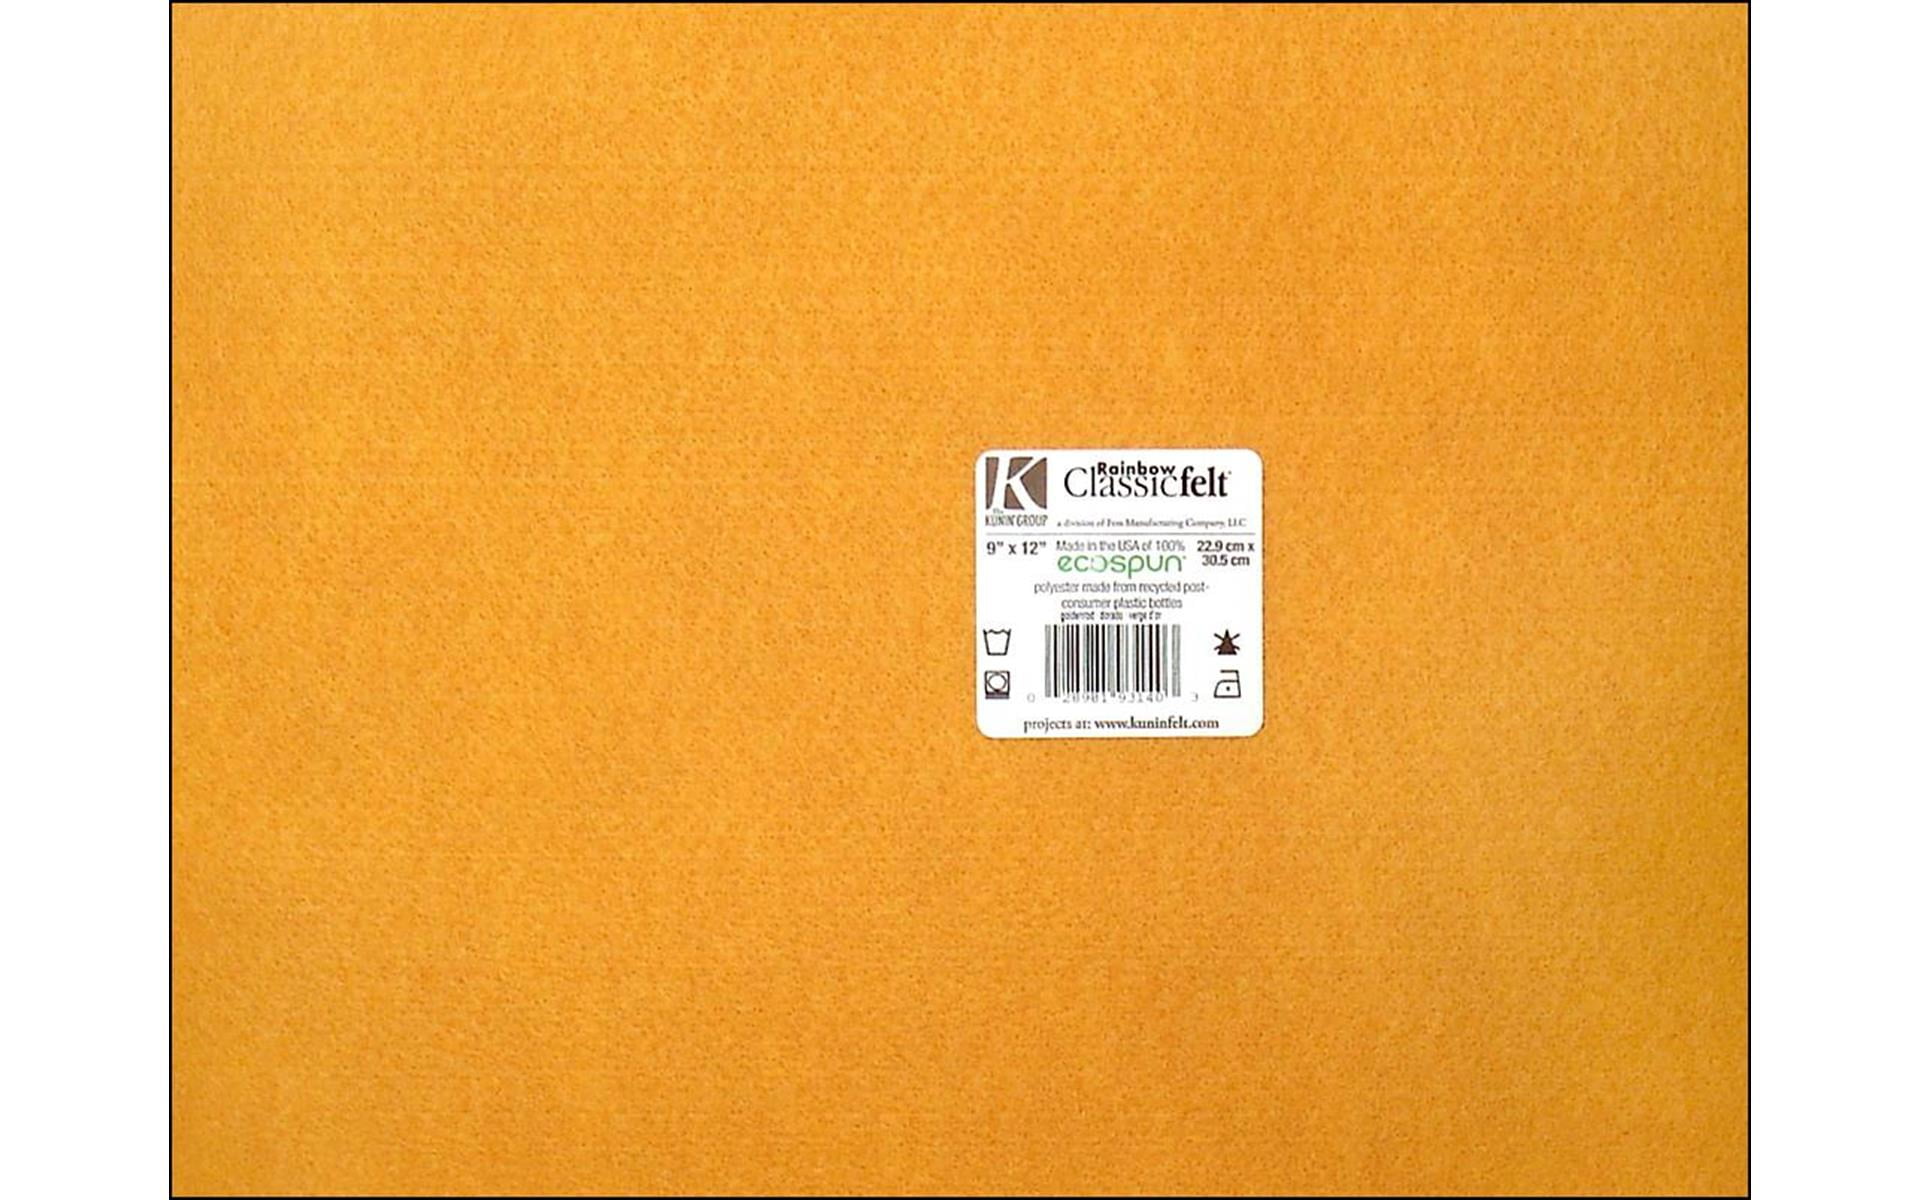 Kunin 9 x 12 Orange Felt Sheet, 24 Count 